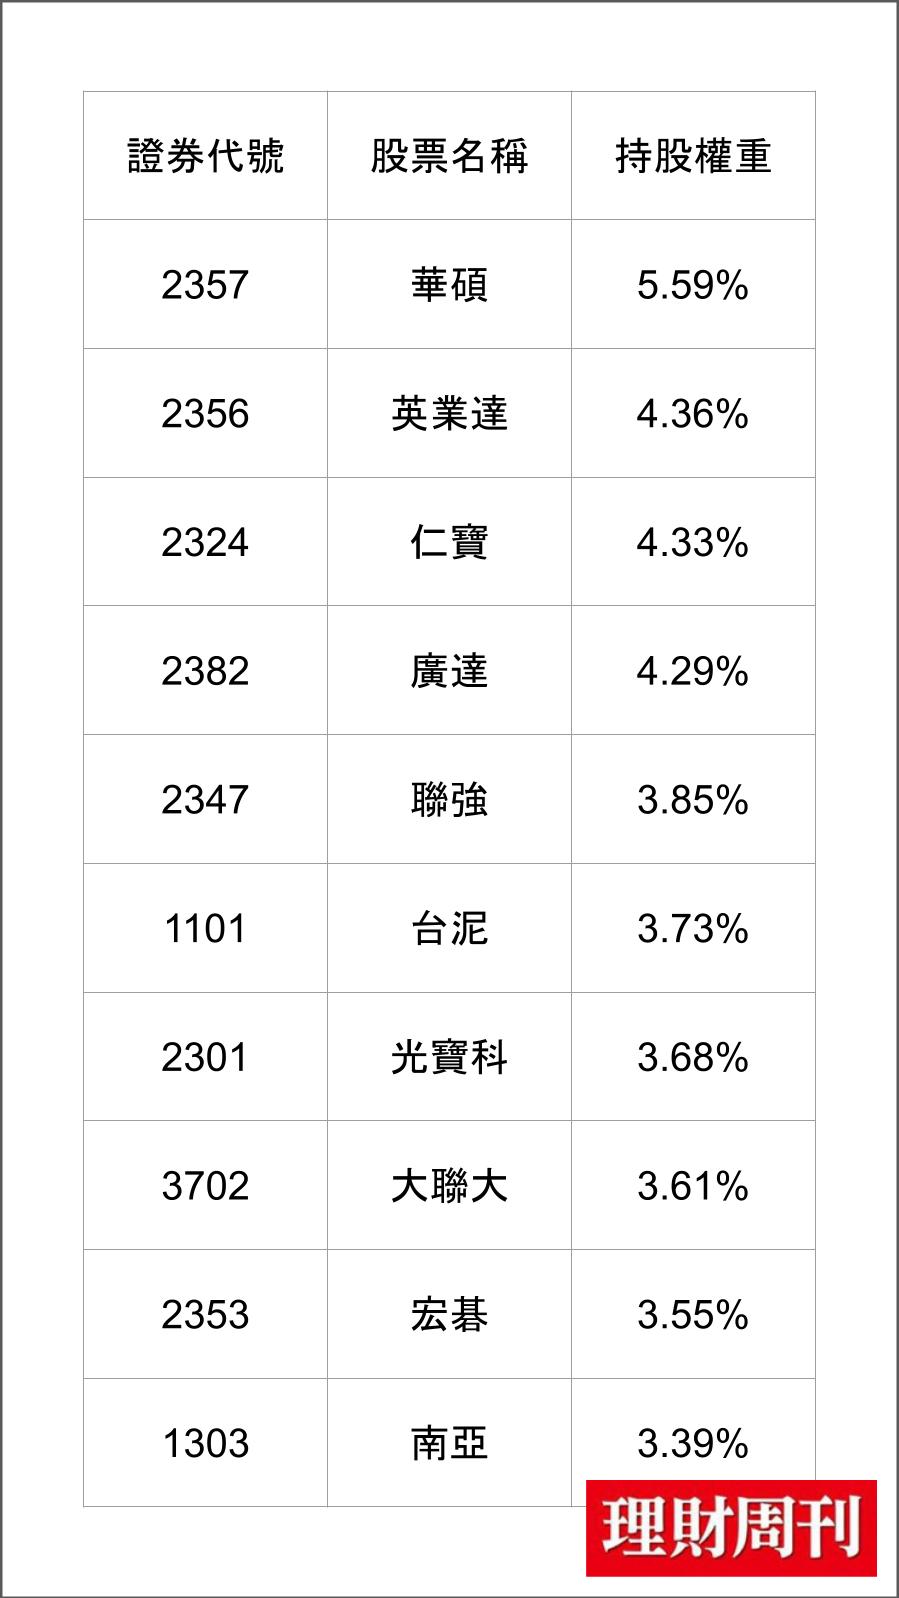 0 0 8 7 8 成 分 股 ( 資 料 來 源 ： 國 泰 投 信 官 網 ) 